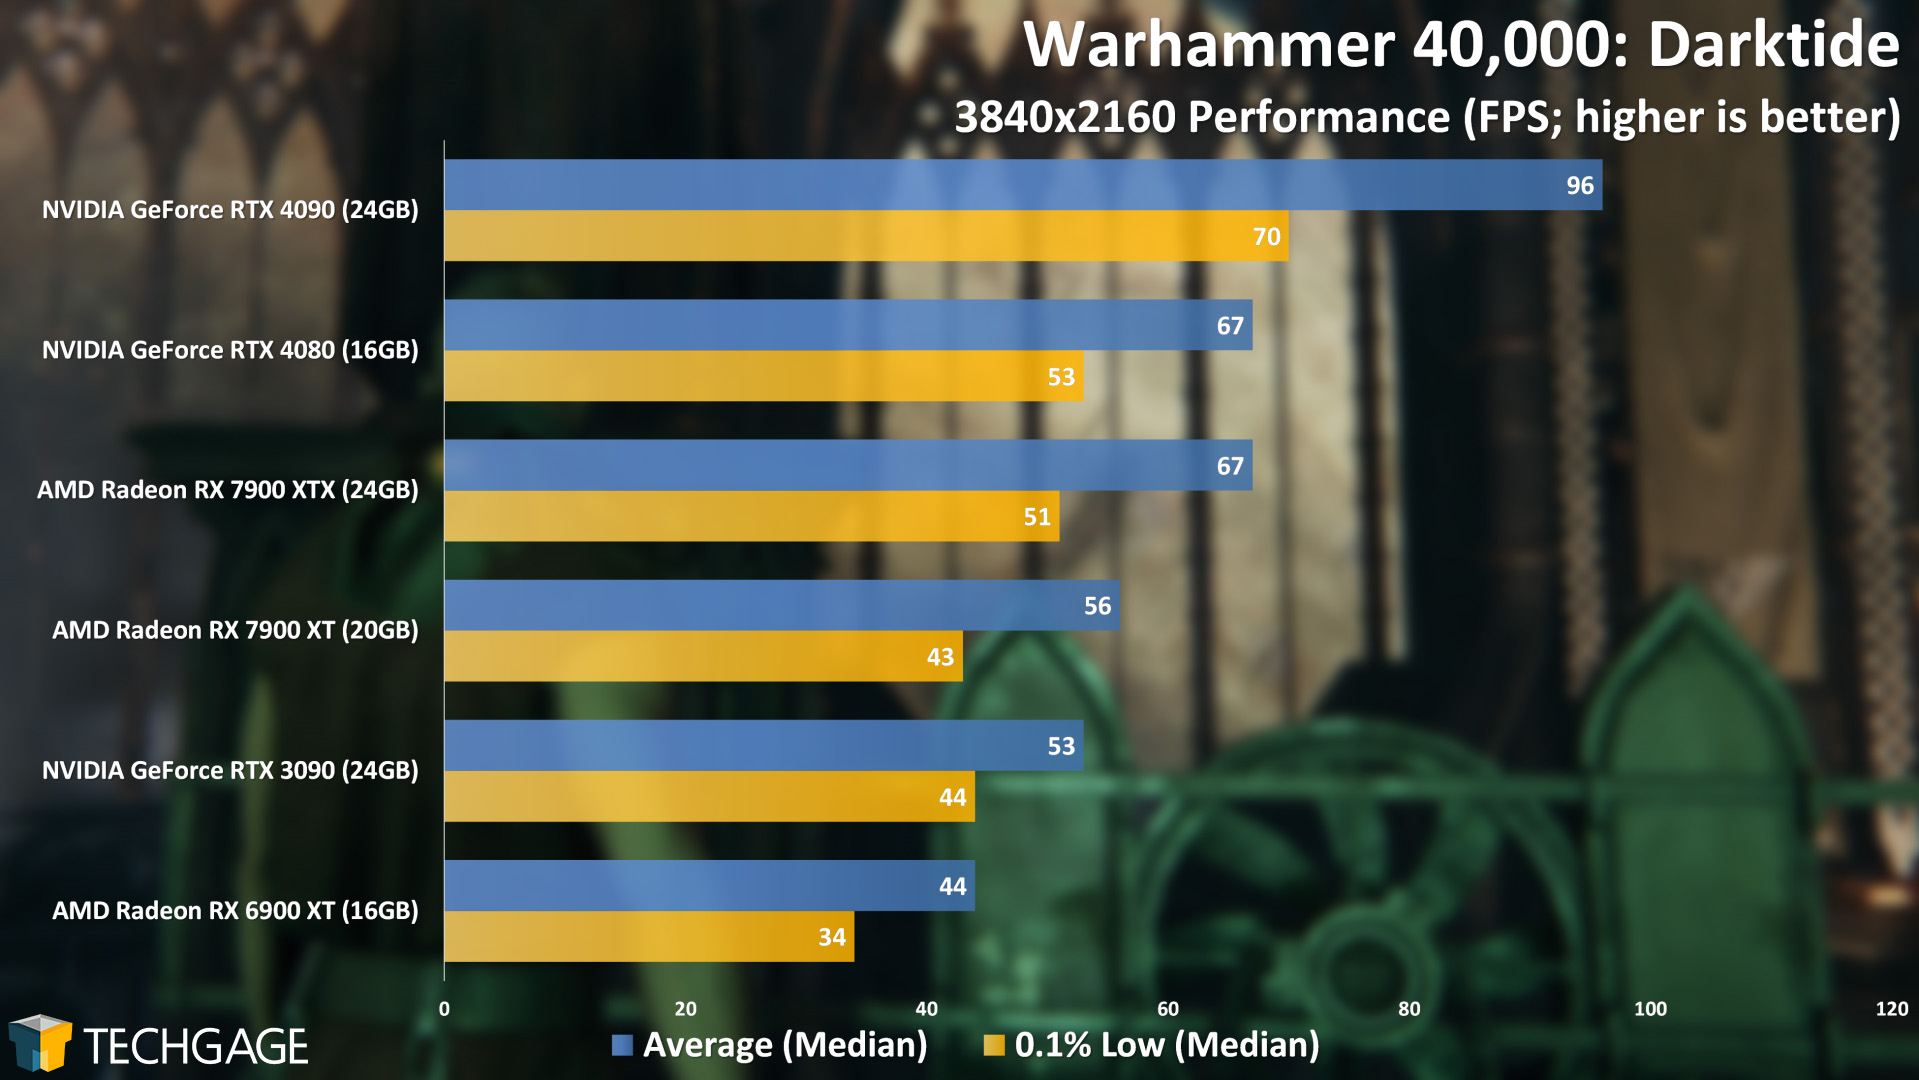 Warhammer 40,000 Darktide 4K Performance (AMD Radeon RX 7900 XT and XTX)